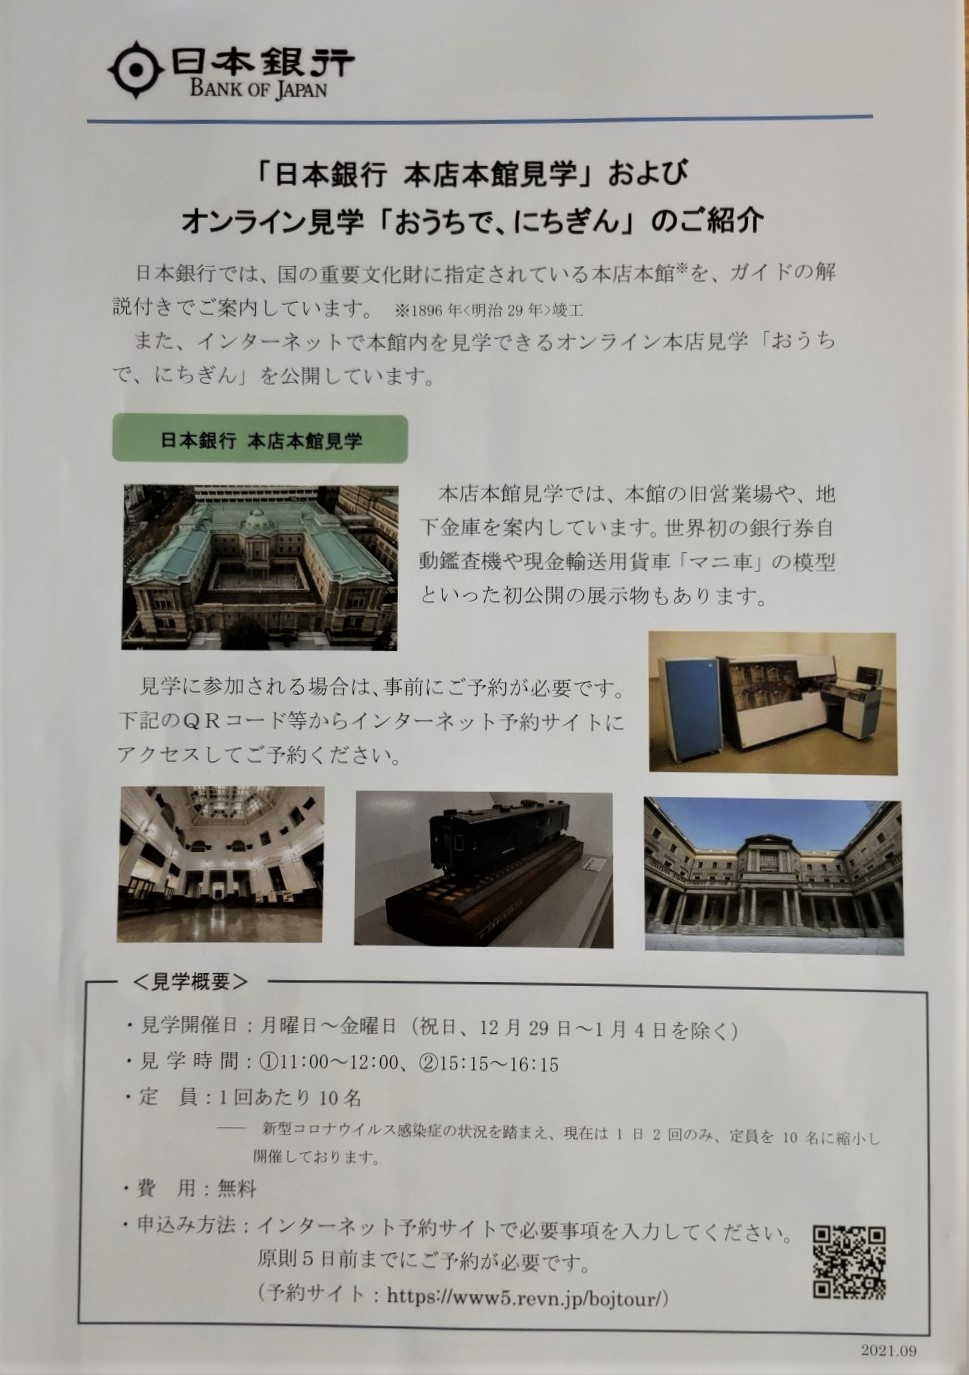 「日本銀行本店本館見学会」 さあ、景気の良い話をしよう。～日本銀行本店本館のこと～　